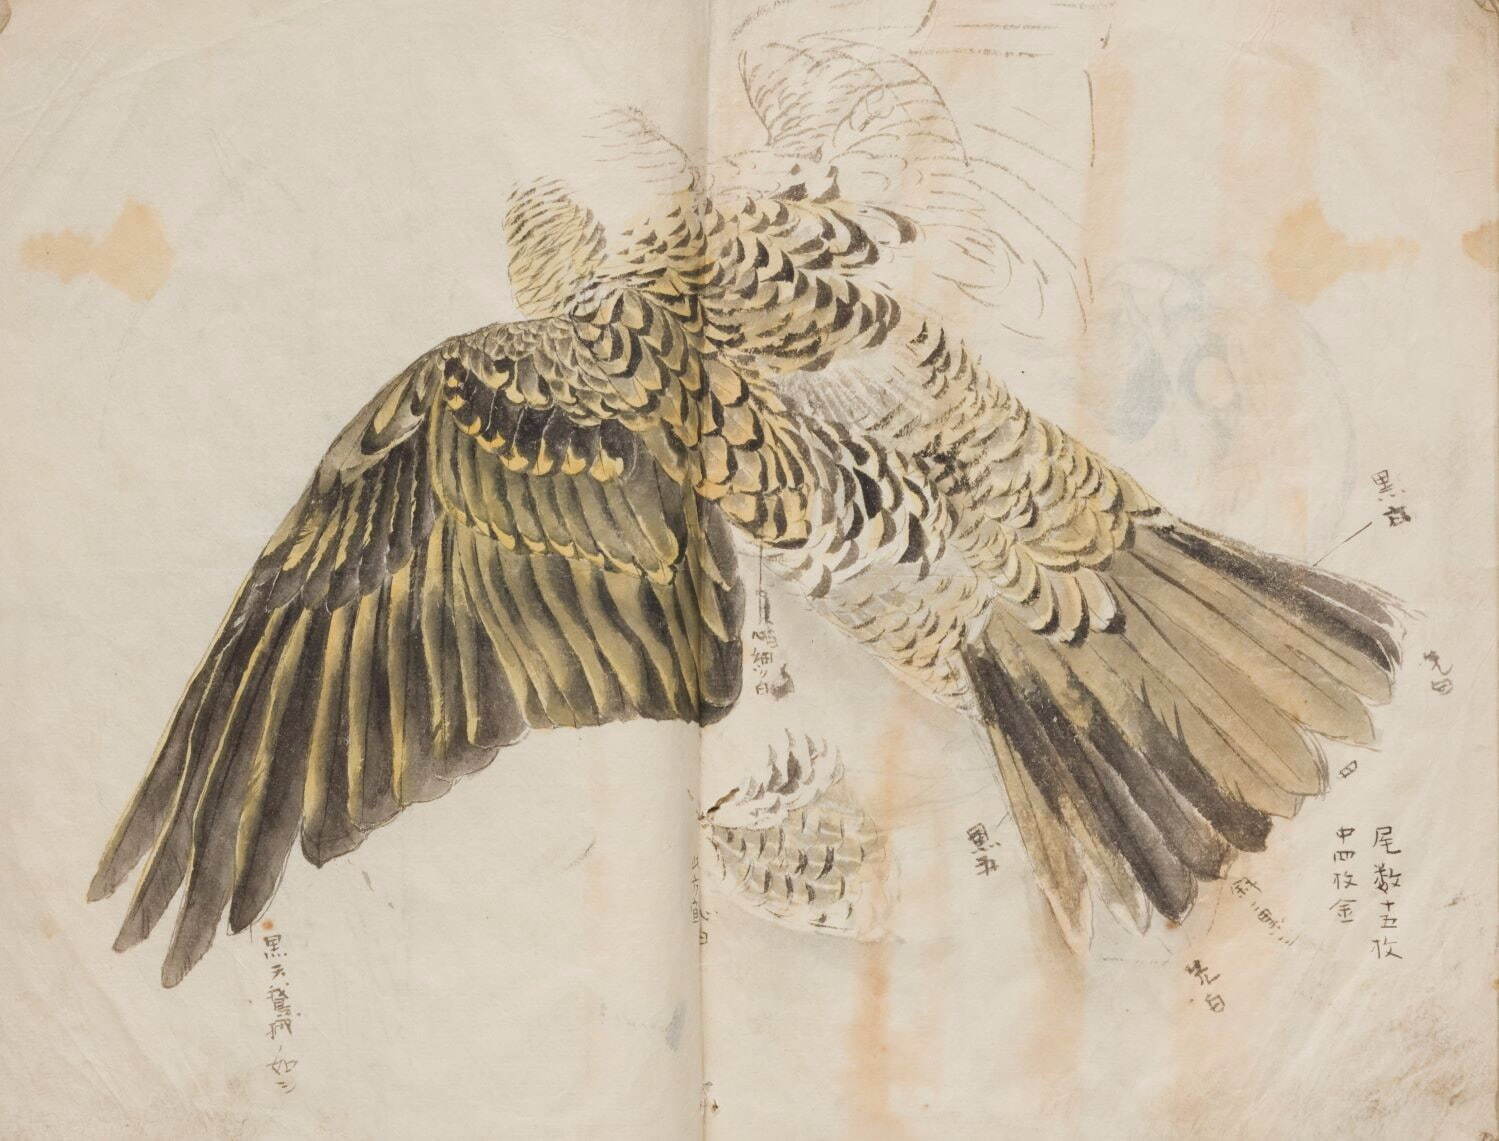 竹内栖鳳《写生帖(鳥類写生)》1880-1881年 京都市美術館蔵